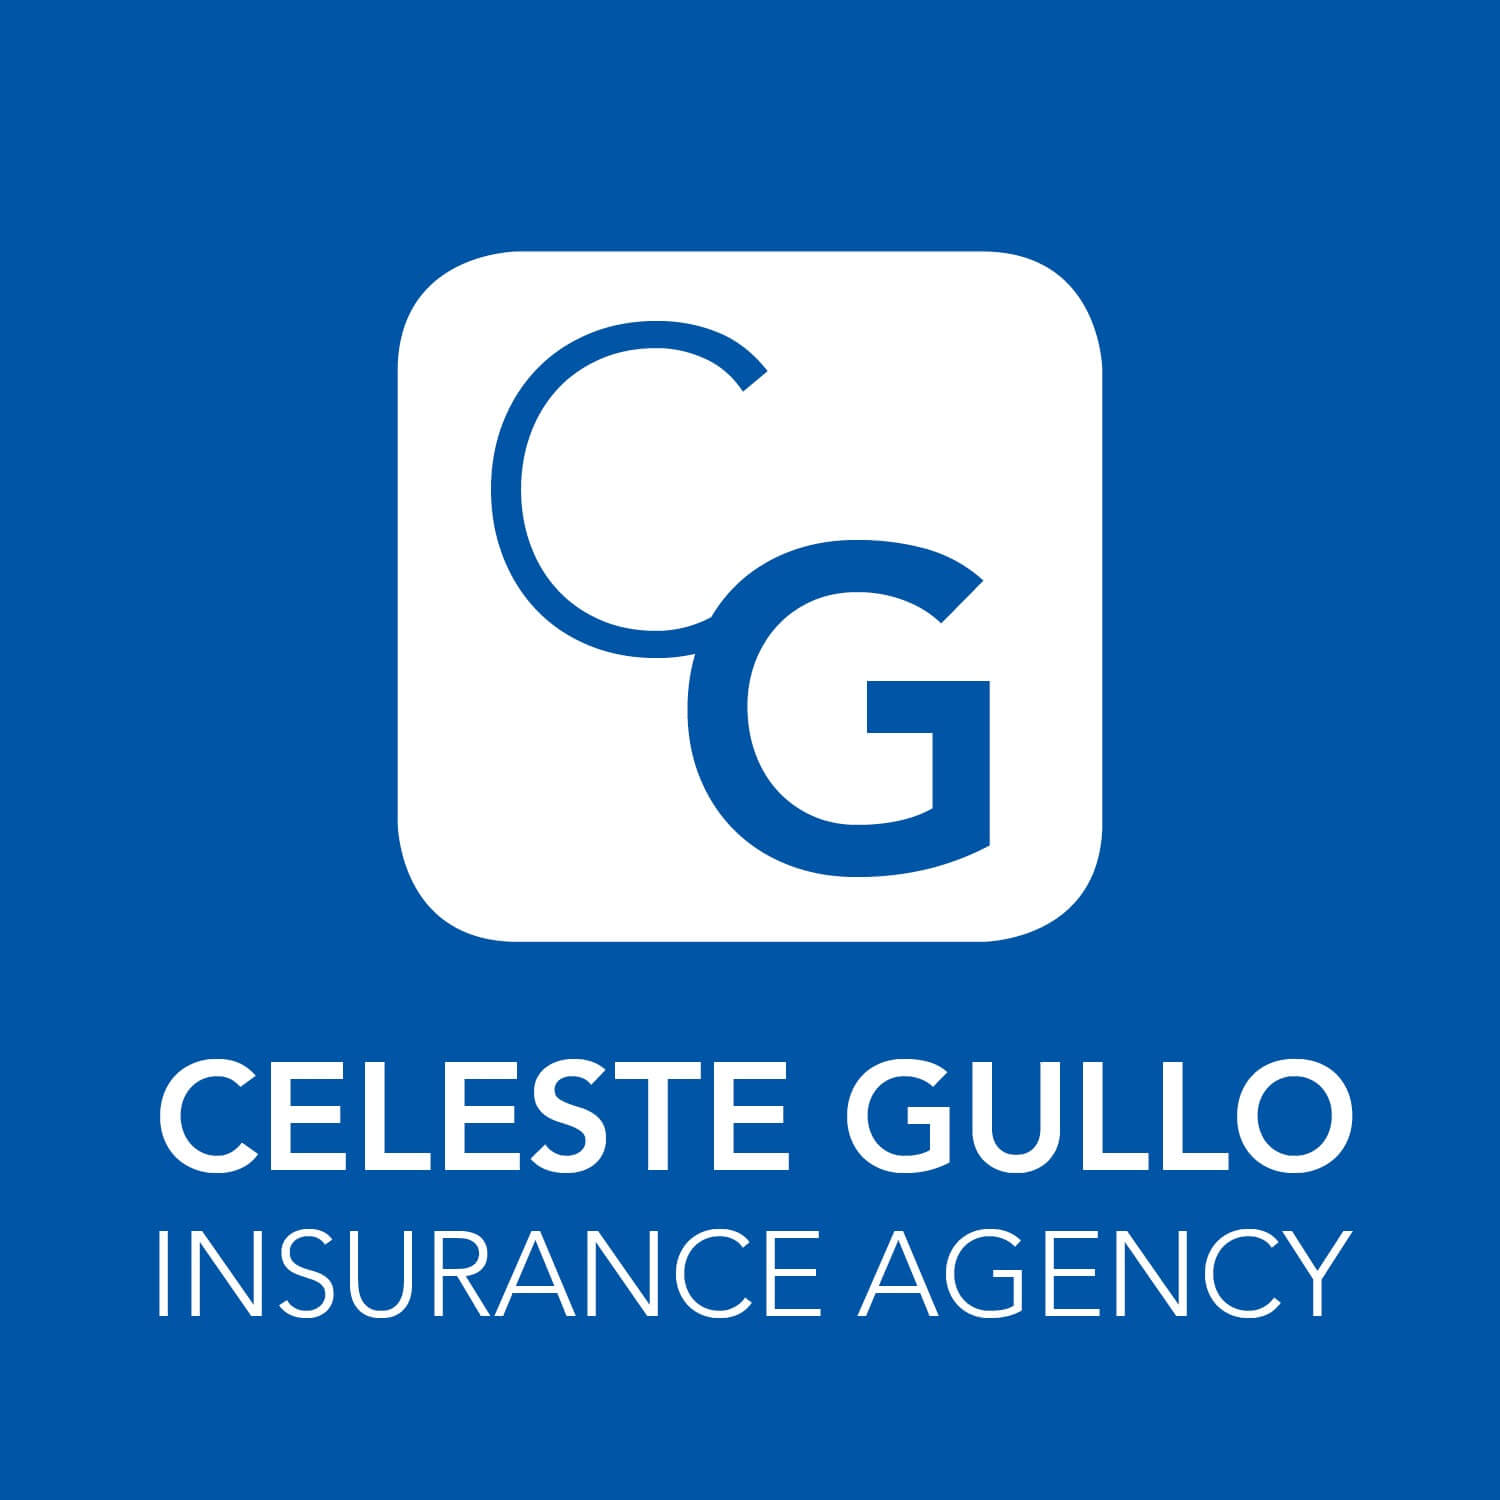 Celeste Gullo Insurance Agency